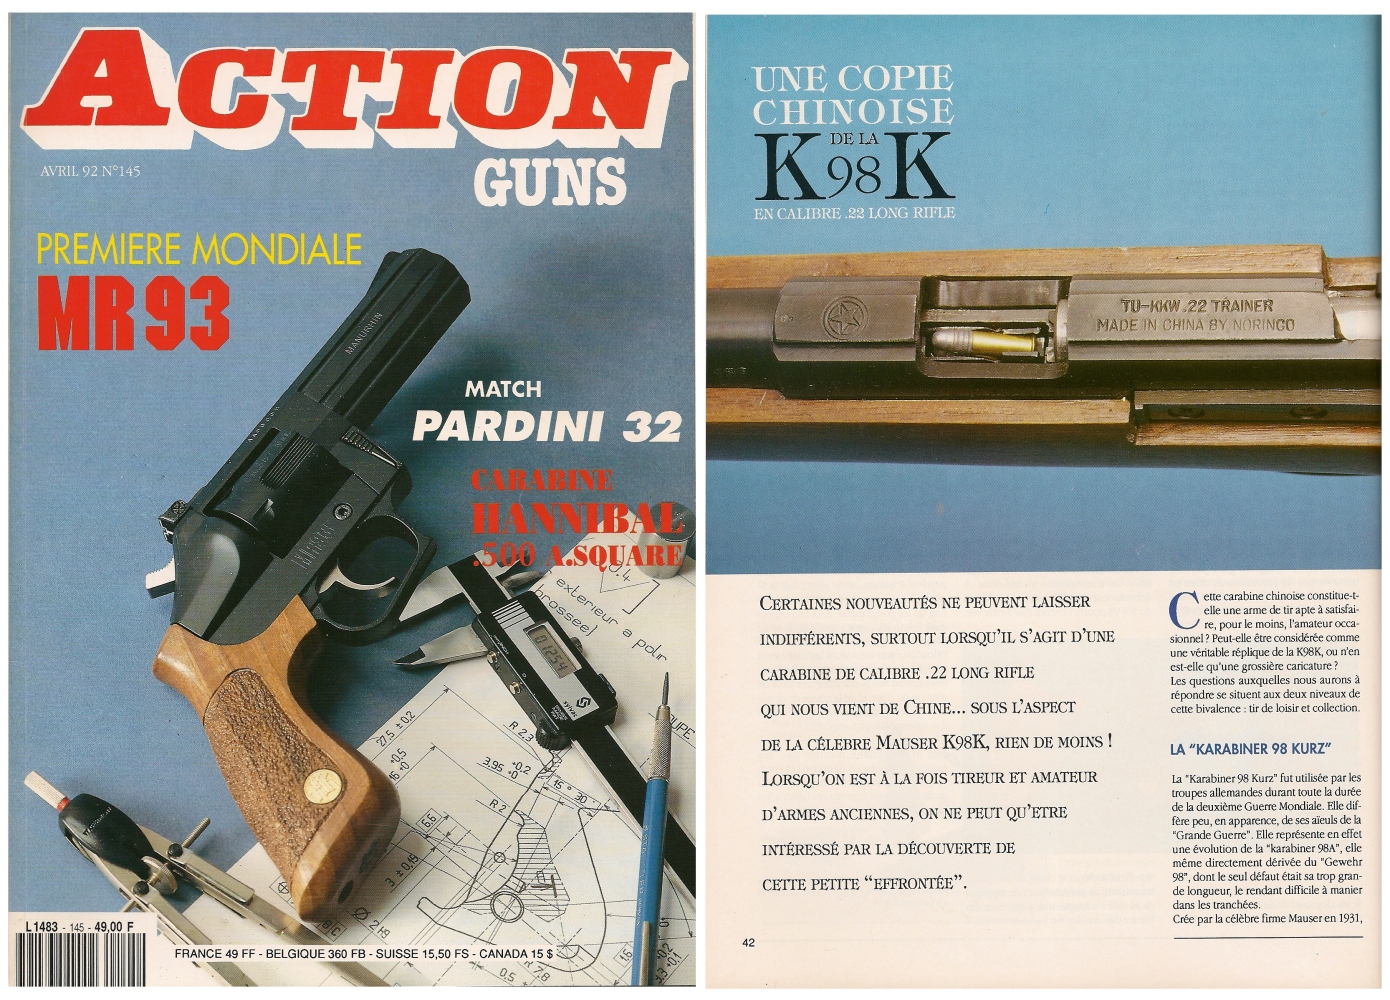 Le banc d’essai de la carabine Norinco TU-KKW .22 a été publié sur 6 pages dans le magazine Action Guns n°145 (avril 1992)